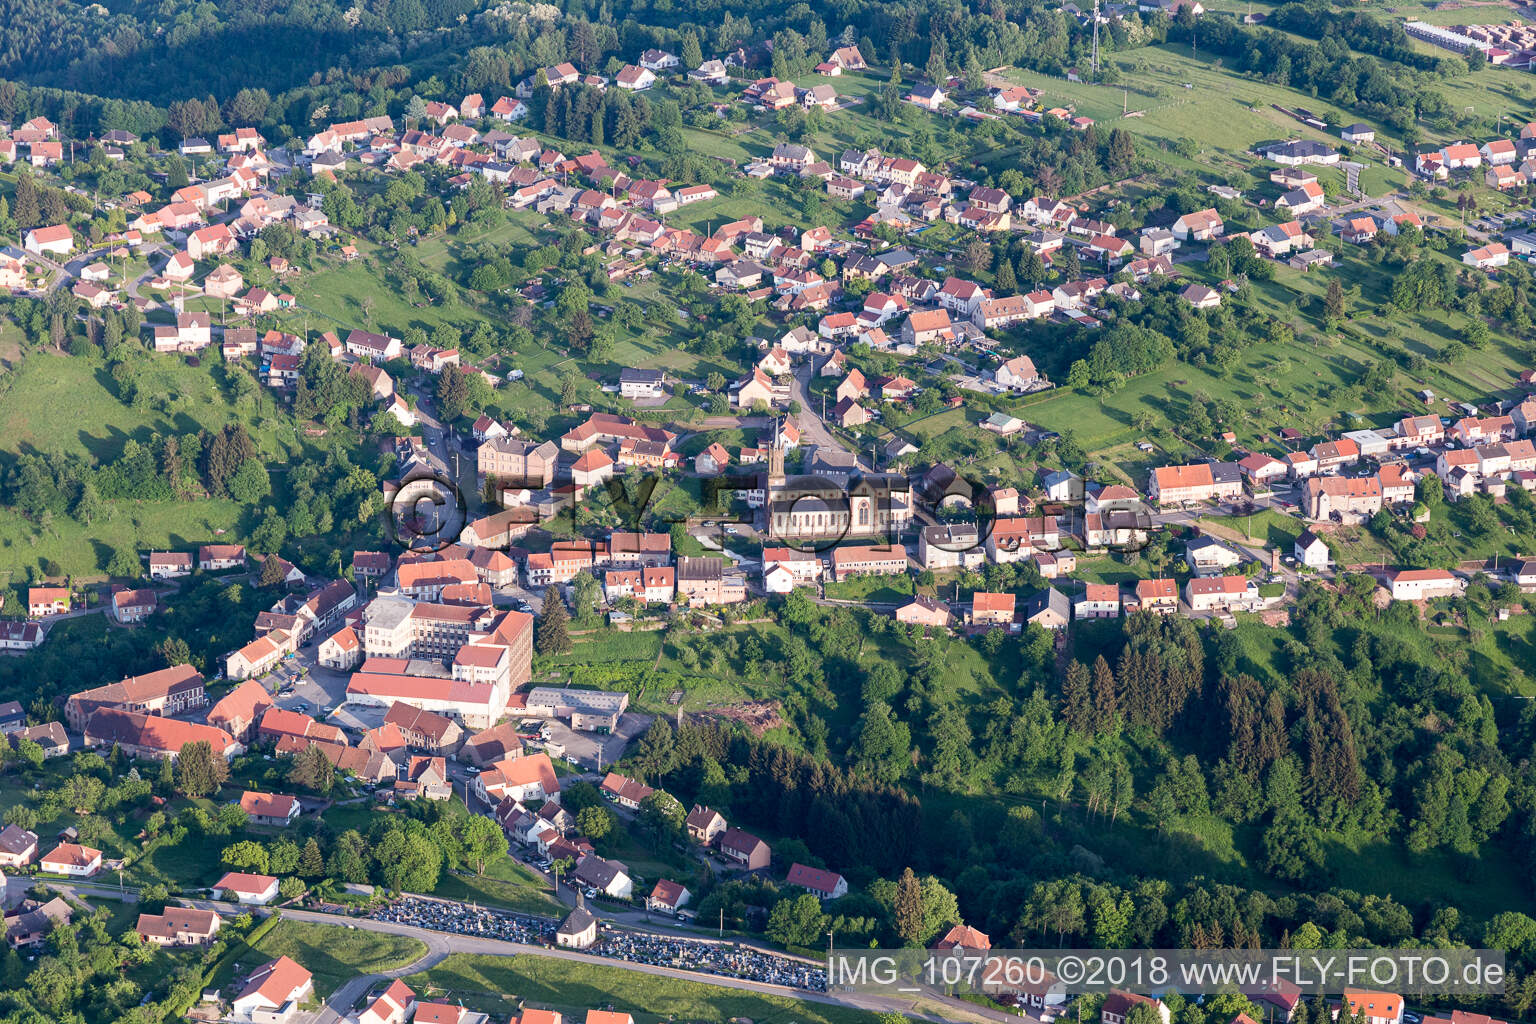 Vue aérienne de Goetzenbruck dans le département Moselle, France